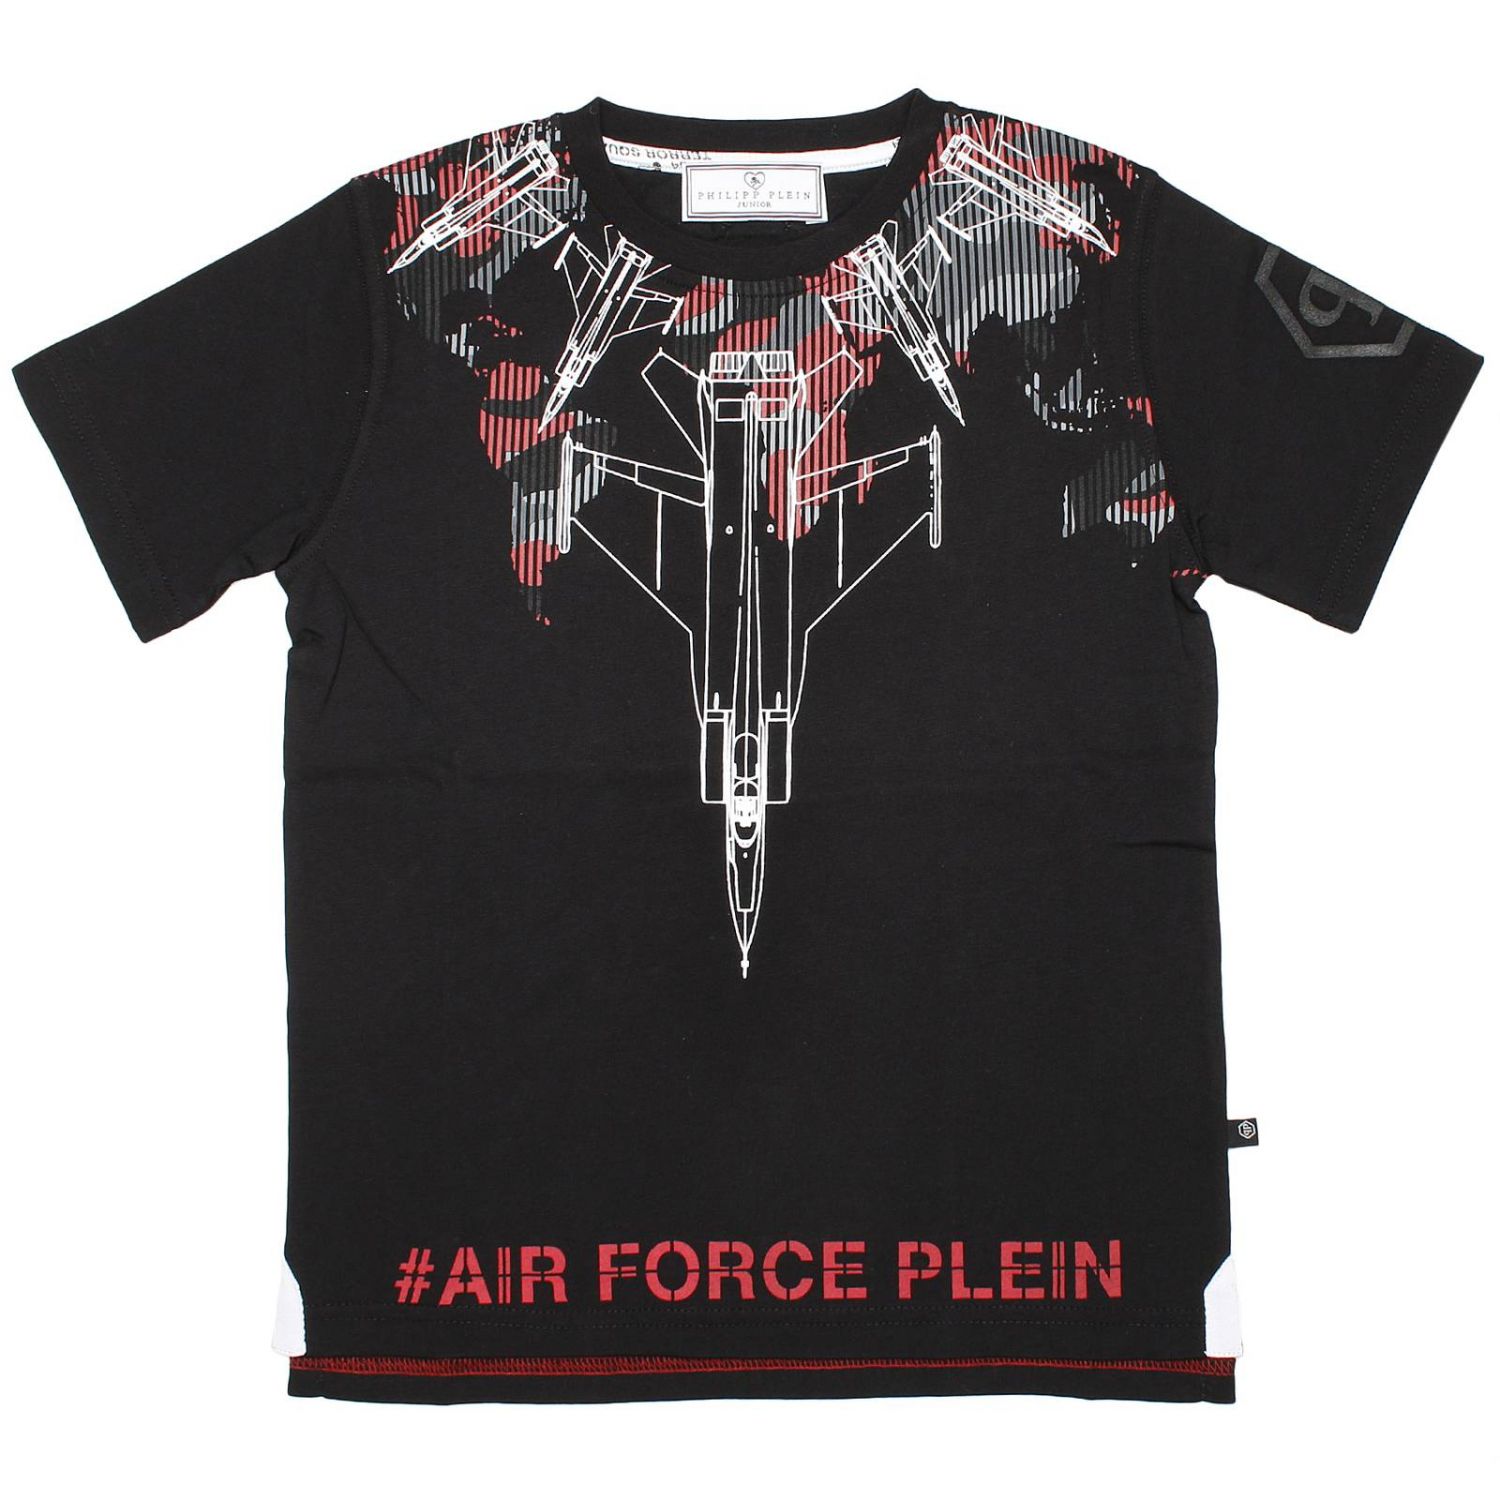 air force plein t shirt